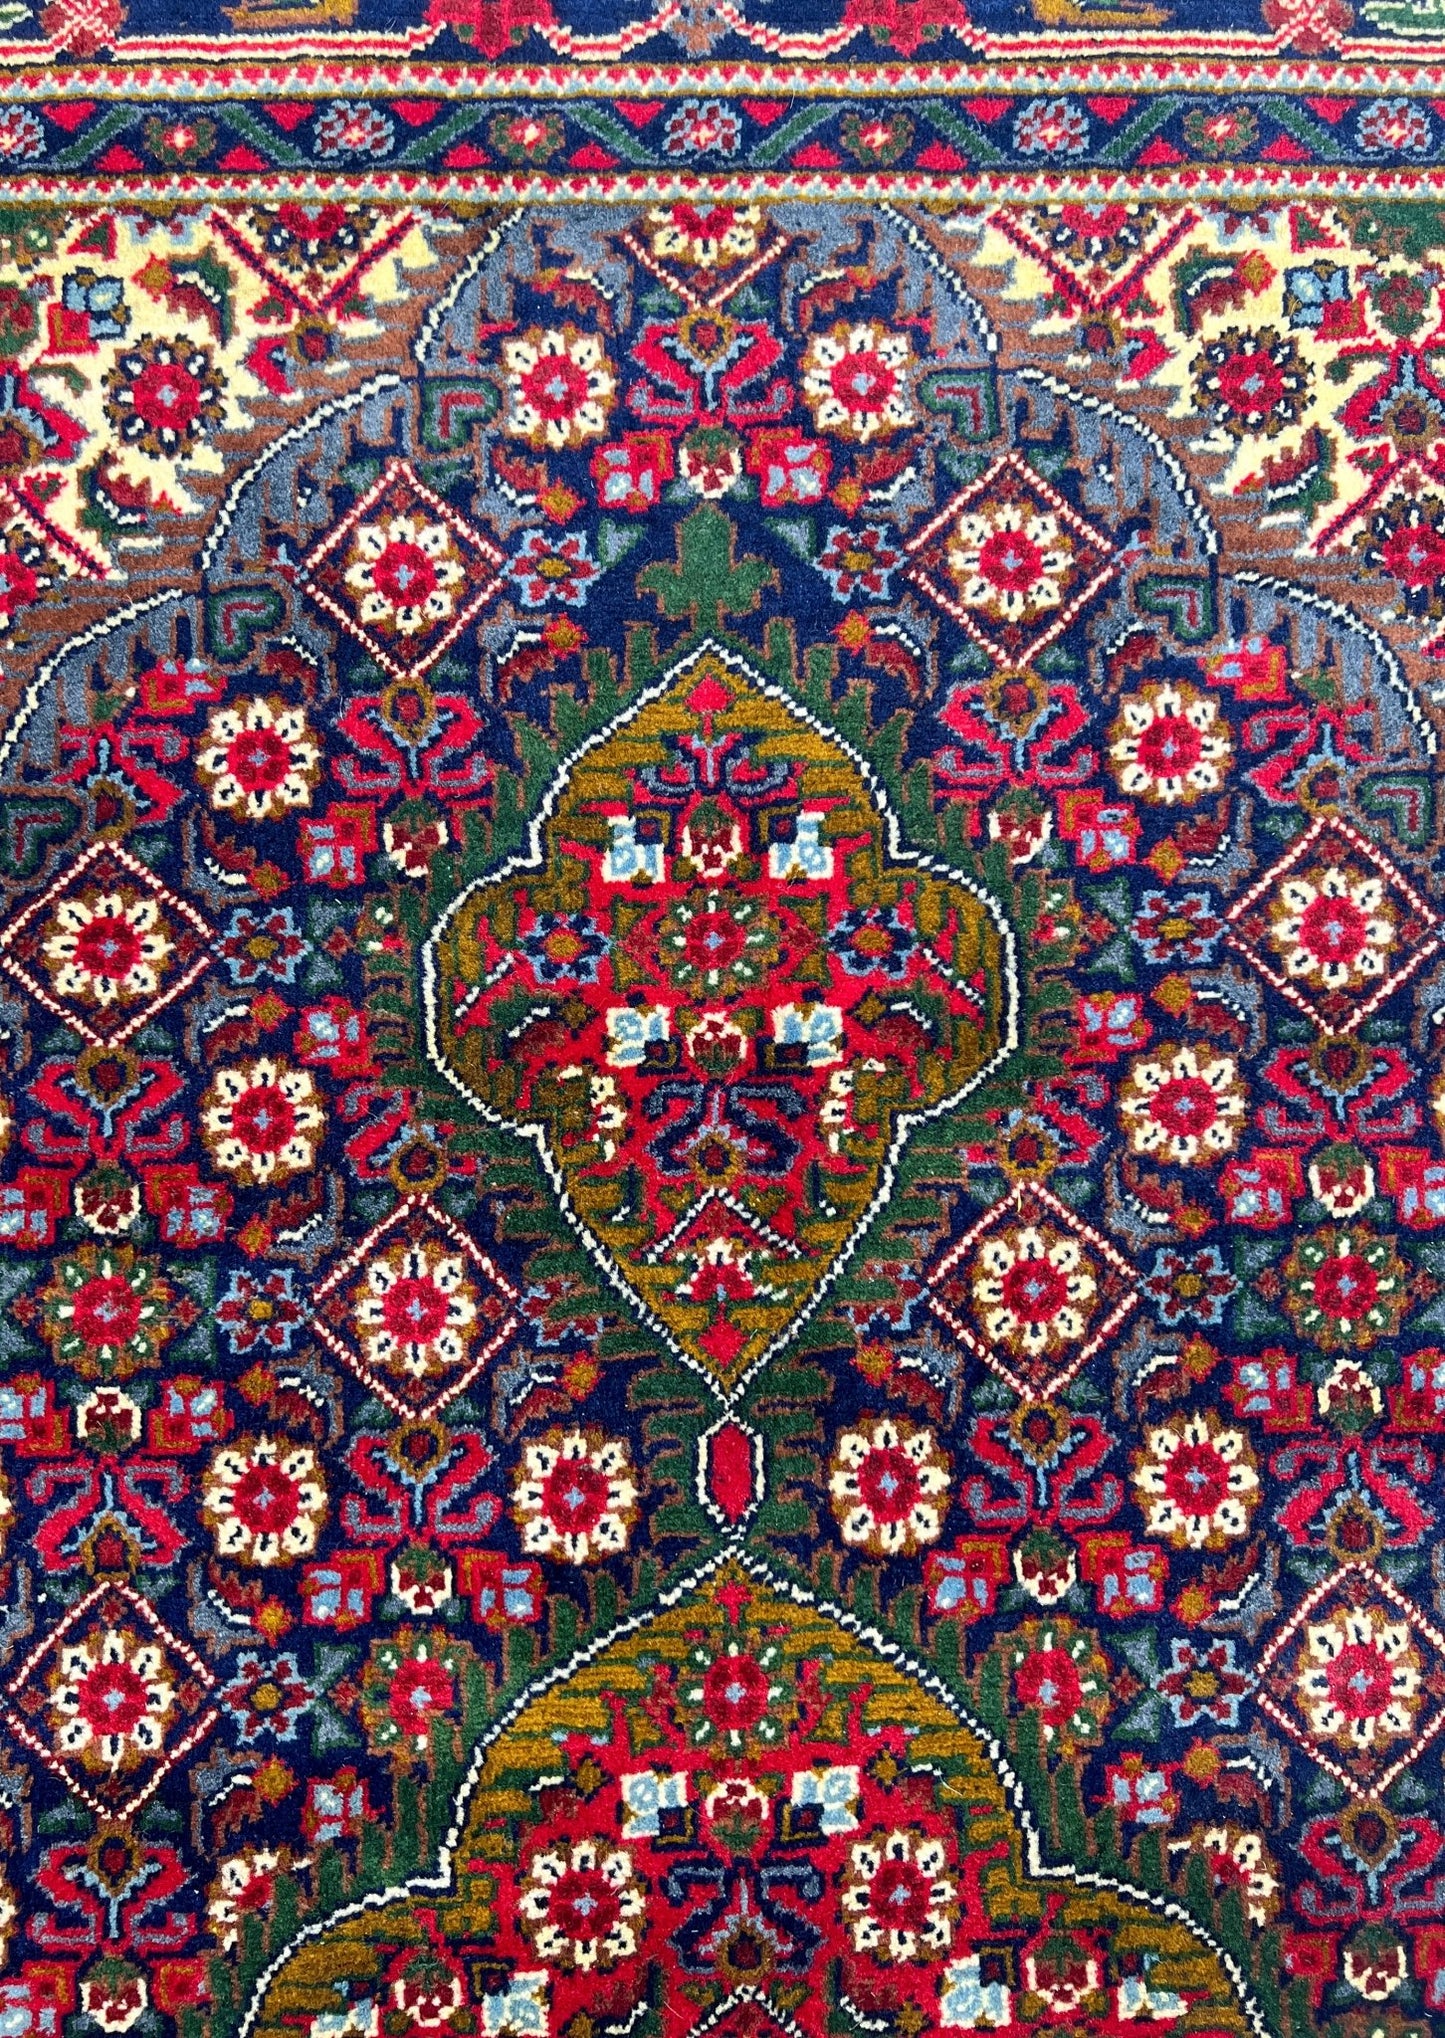 senneh turkmen rug san francisco bay area oriental rug palo alto buy rug berkeley buy rug online california canada toronto